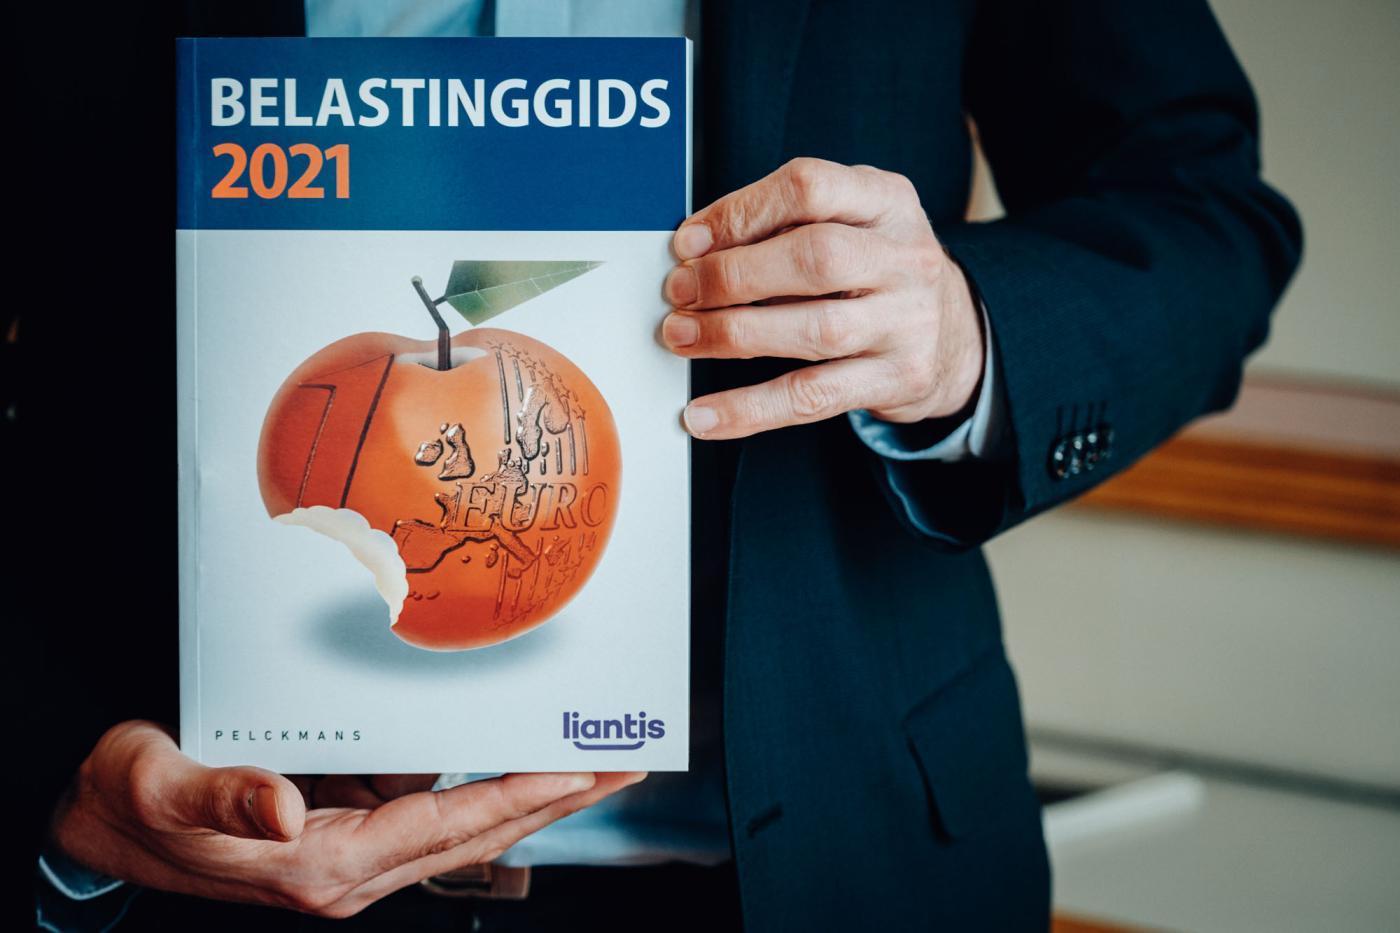 Belastinggids 2021 - cover